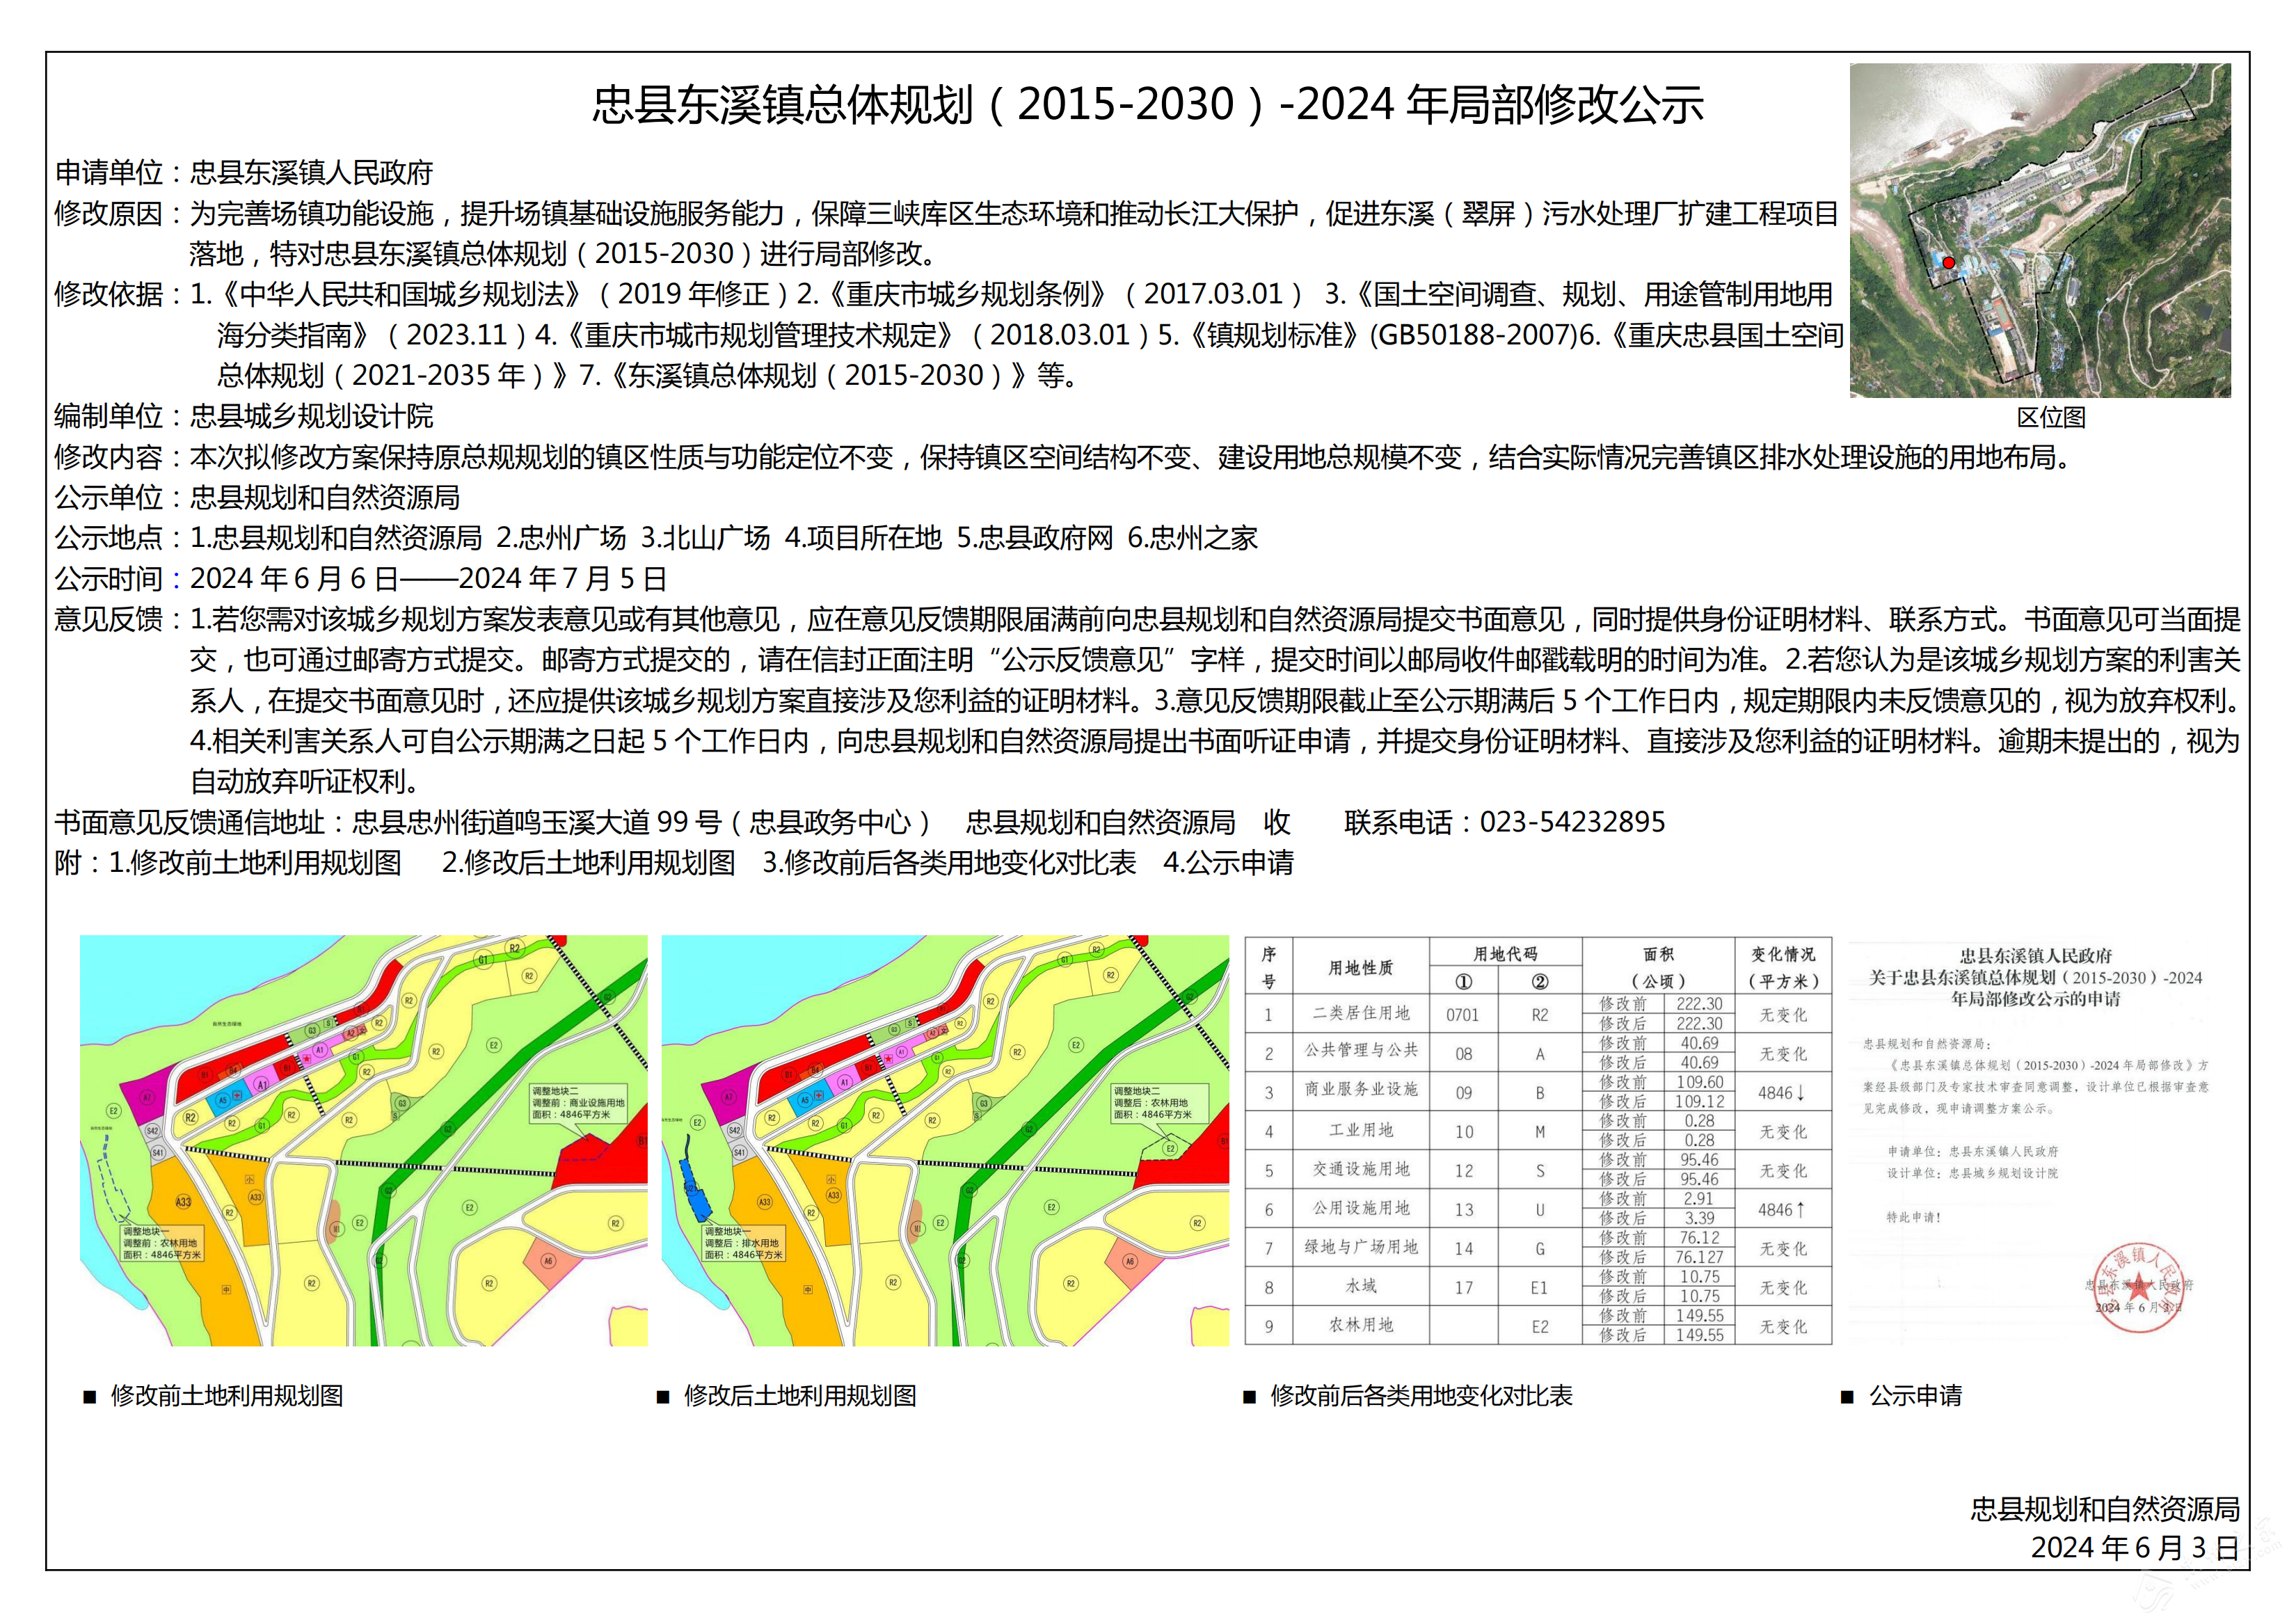 忠县东溪镇总体规划（2015-2030）-2024 年局部修改公示